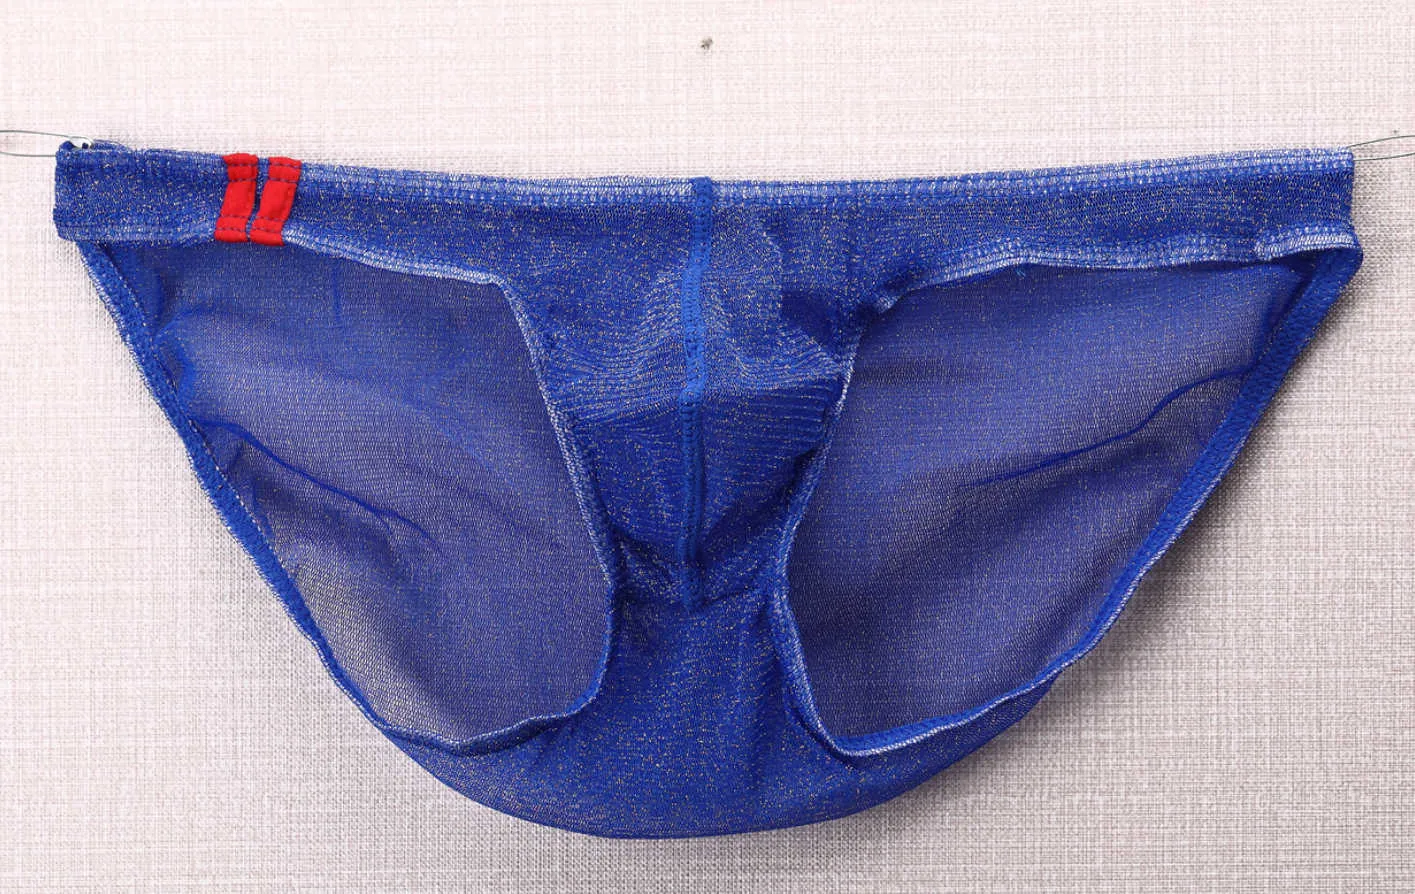 5 Sexy Men's Underwear Front Convexo Ver através de Briefs Mens Confortável Saco Elástico Respirável Alta Qualidade Precisa Homem E-078 210730